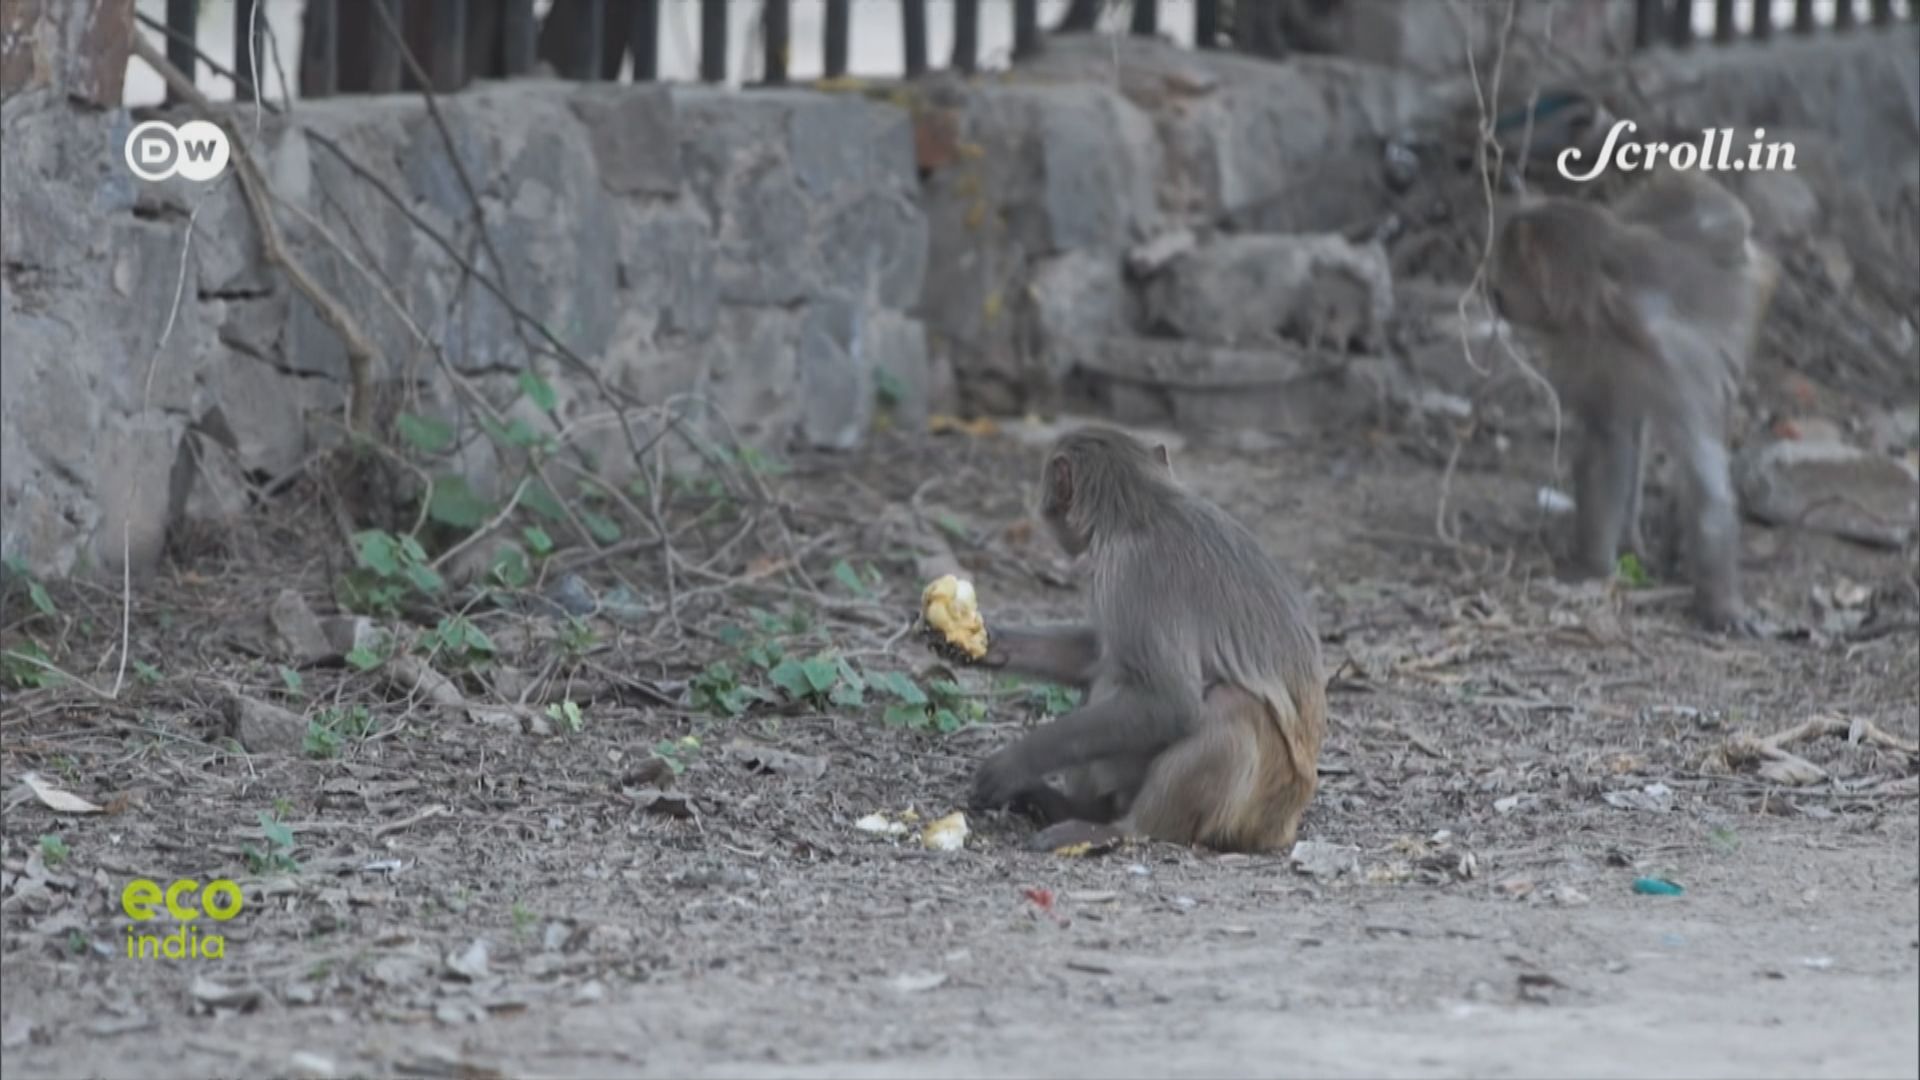 印度G20峰會保安包括驅趕獼猴